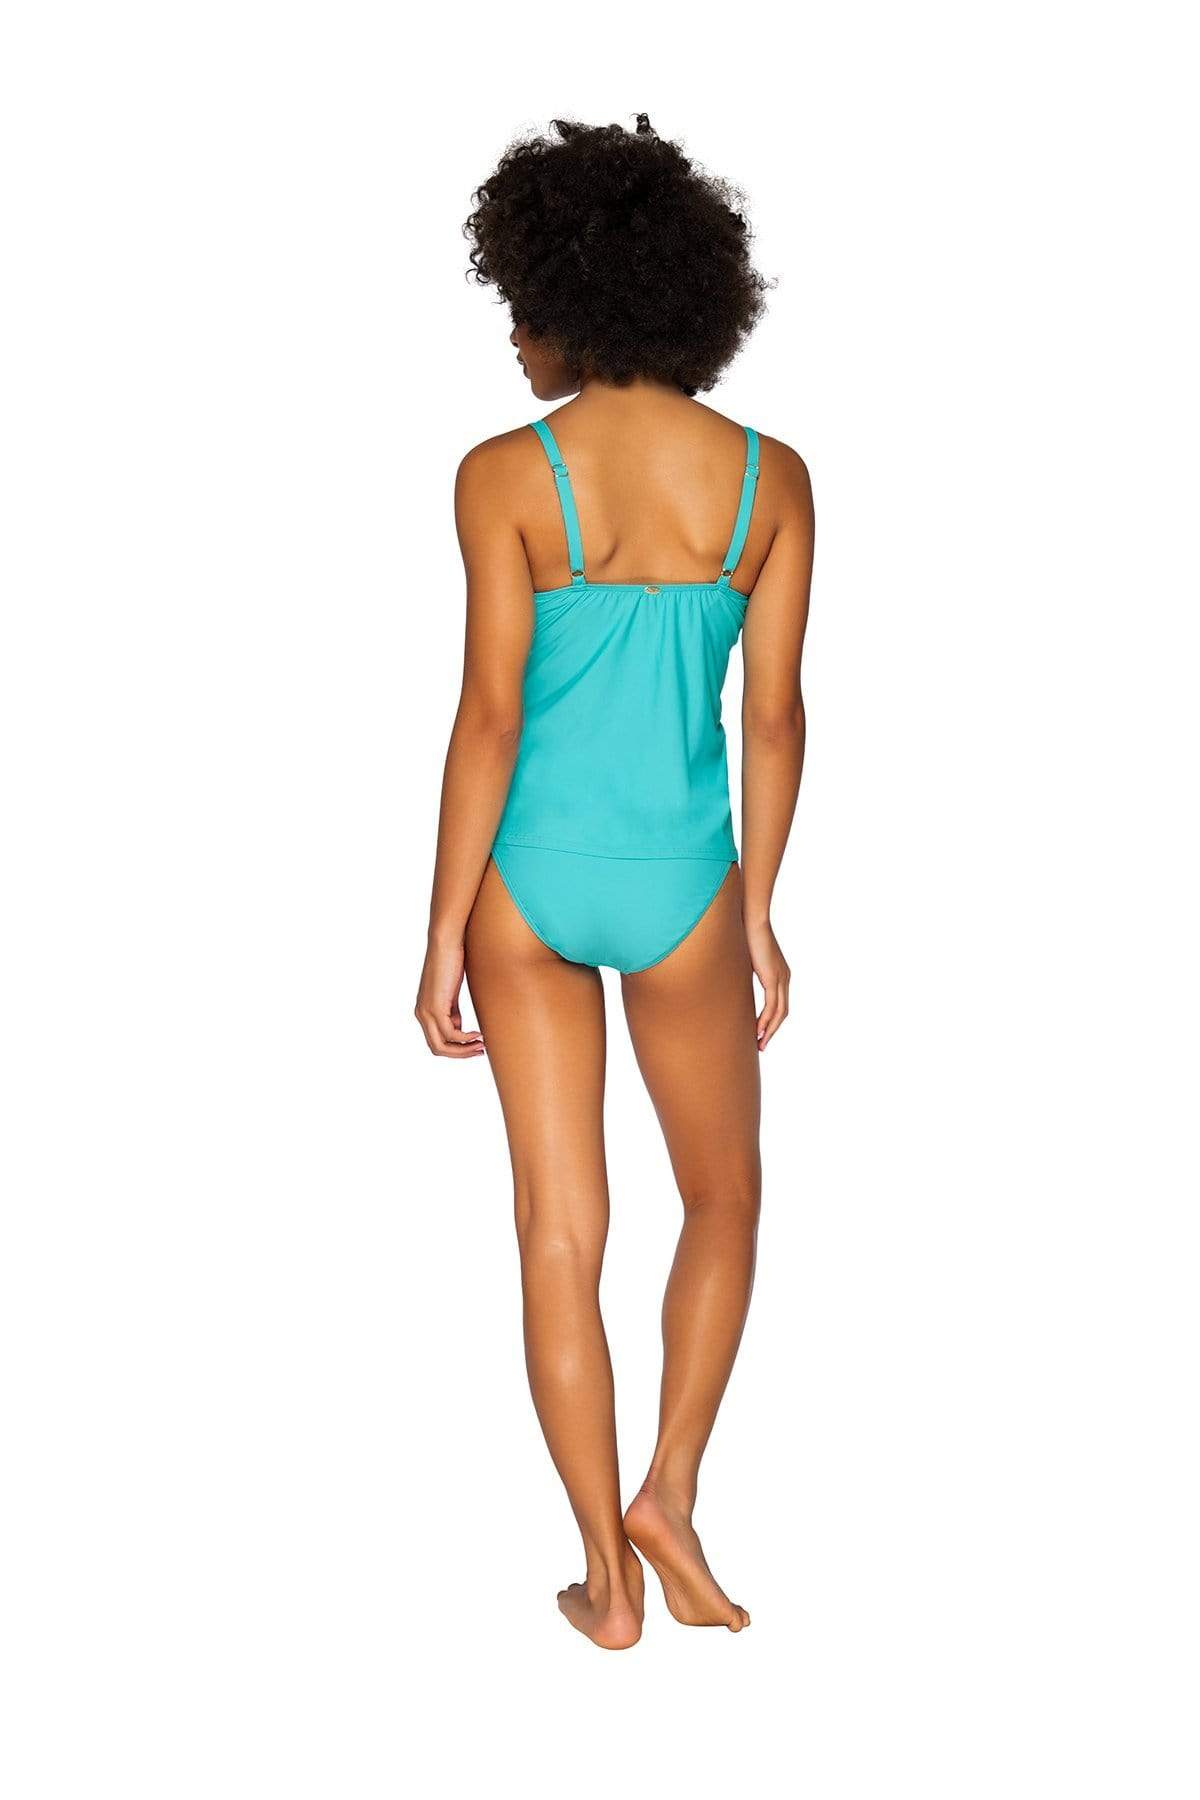 Bestswimwear -  Sunsets Seaside Aqua Avery Tankini